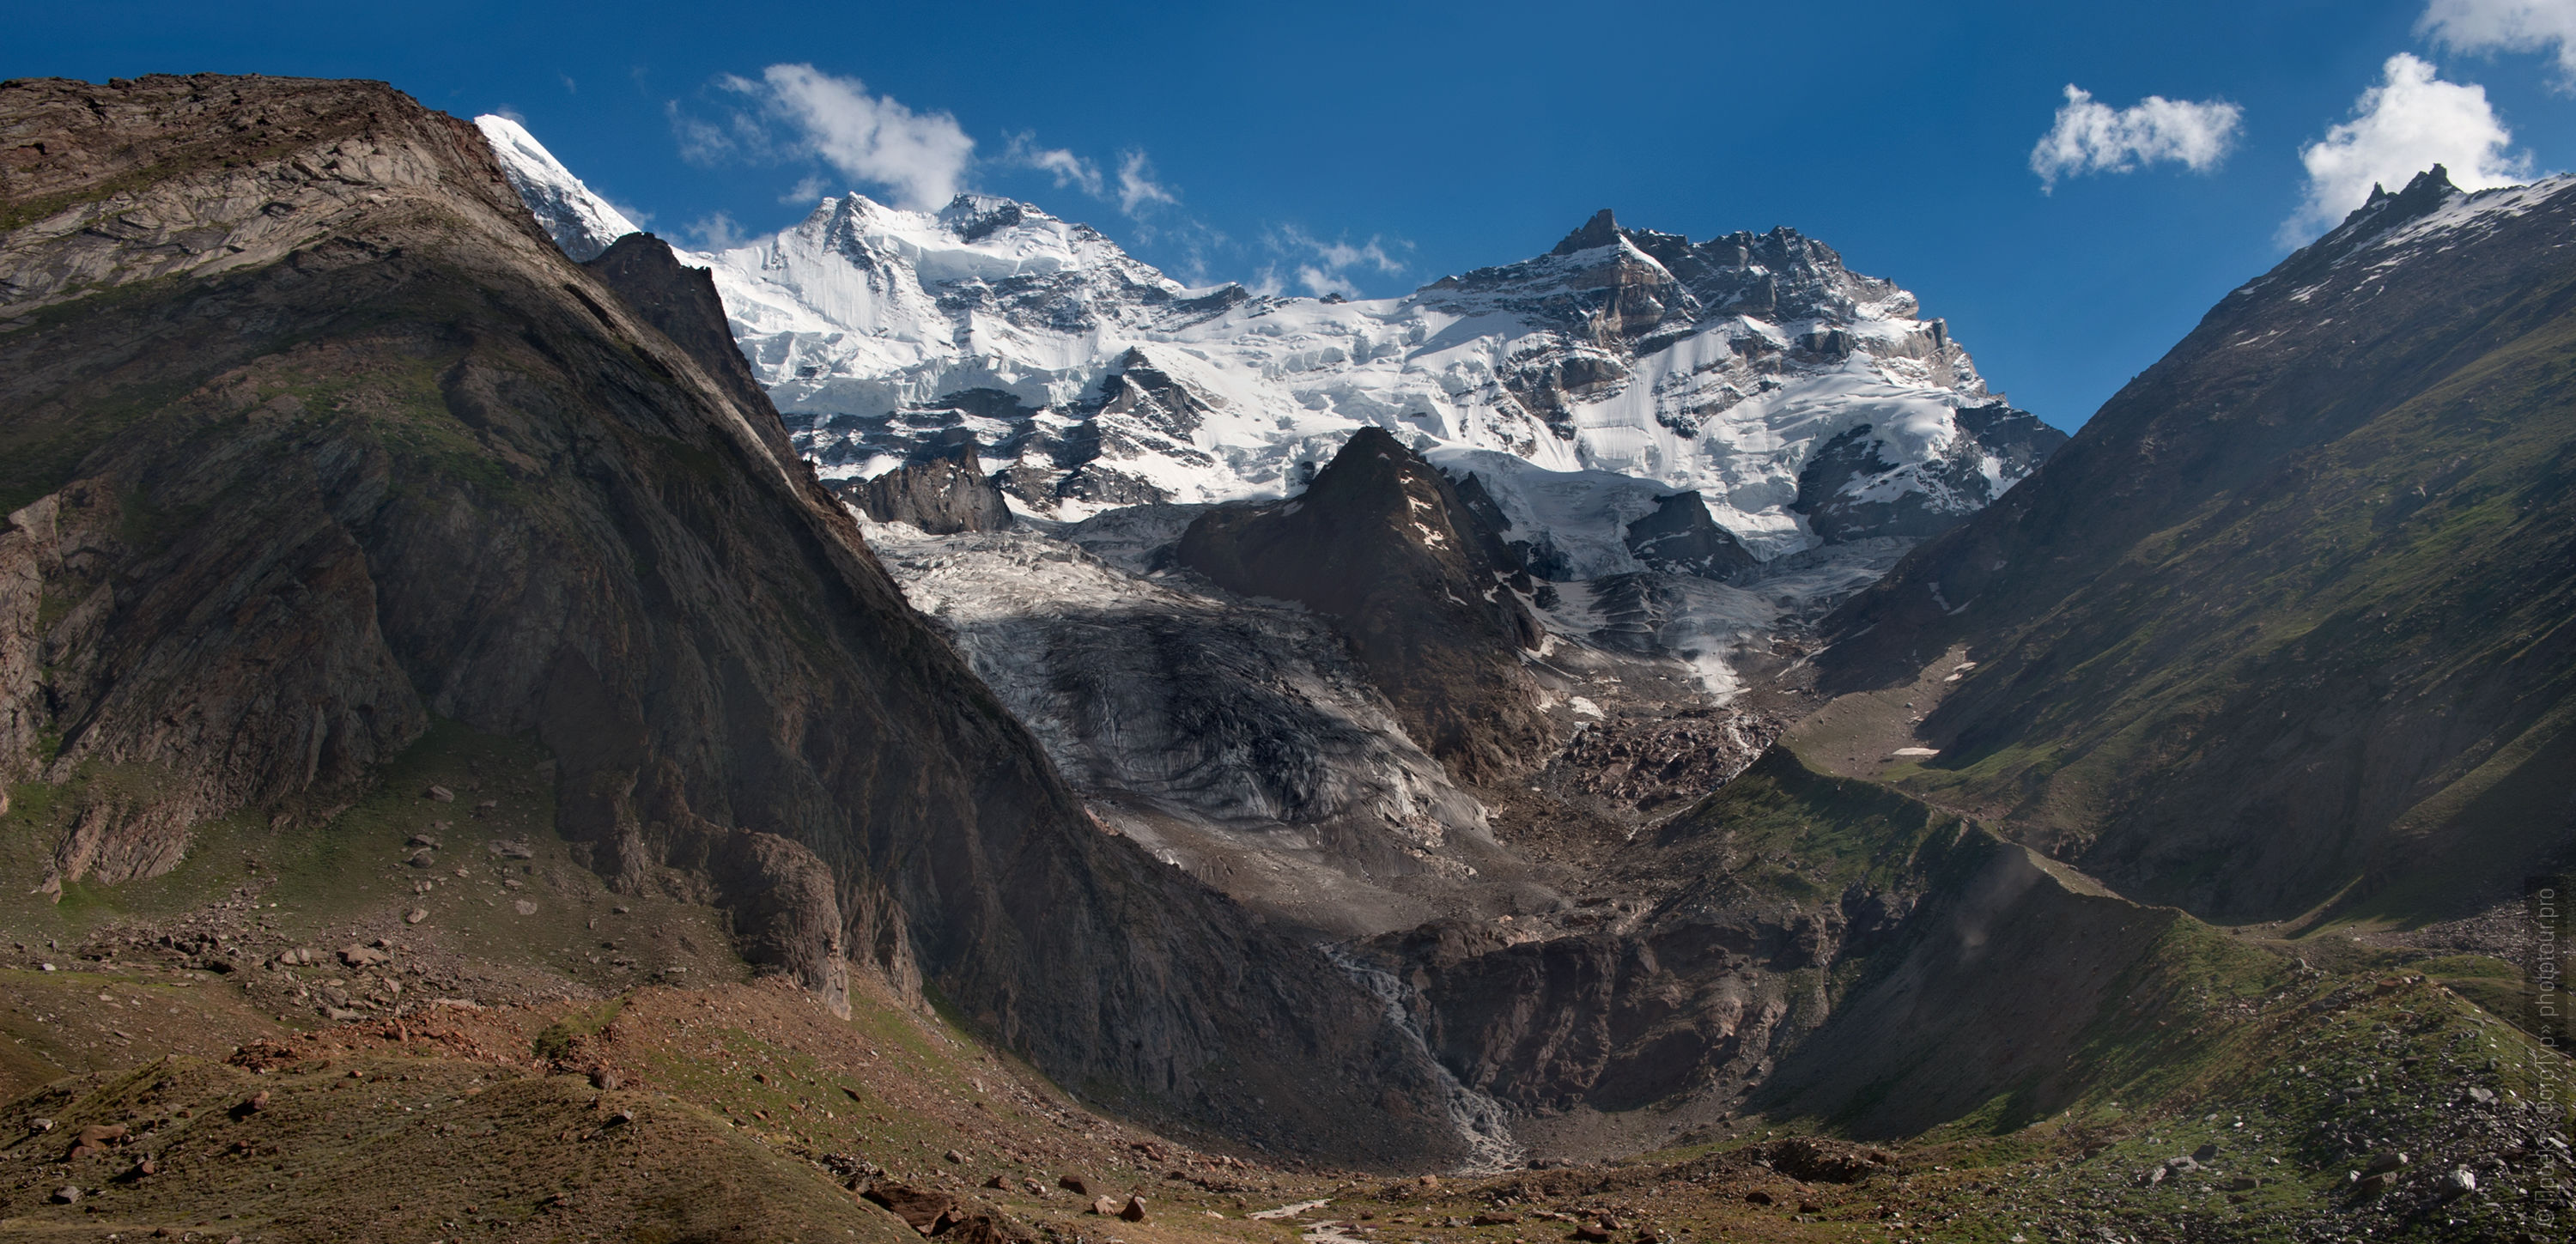 Ледники долины Суру, тур по Занскару, сентябрь 2017 года.